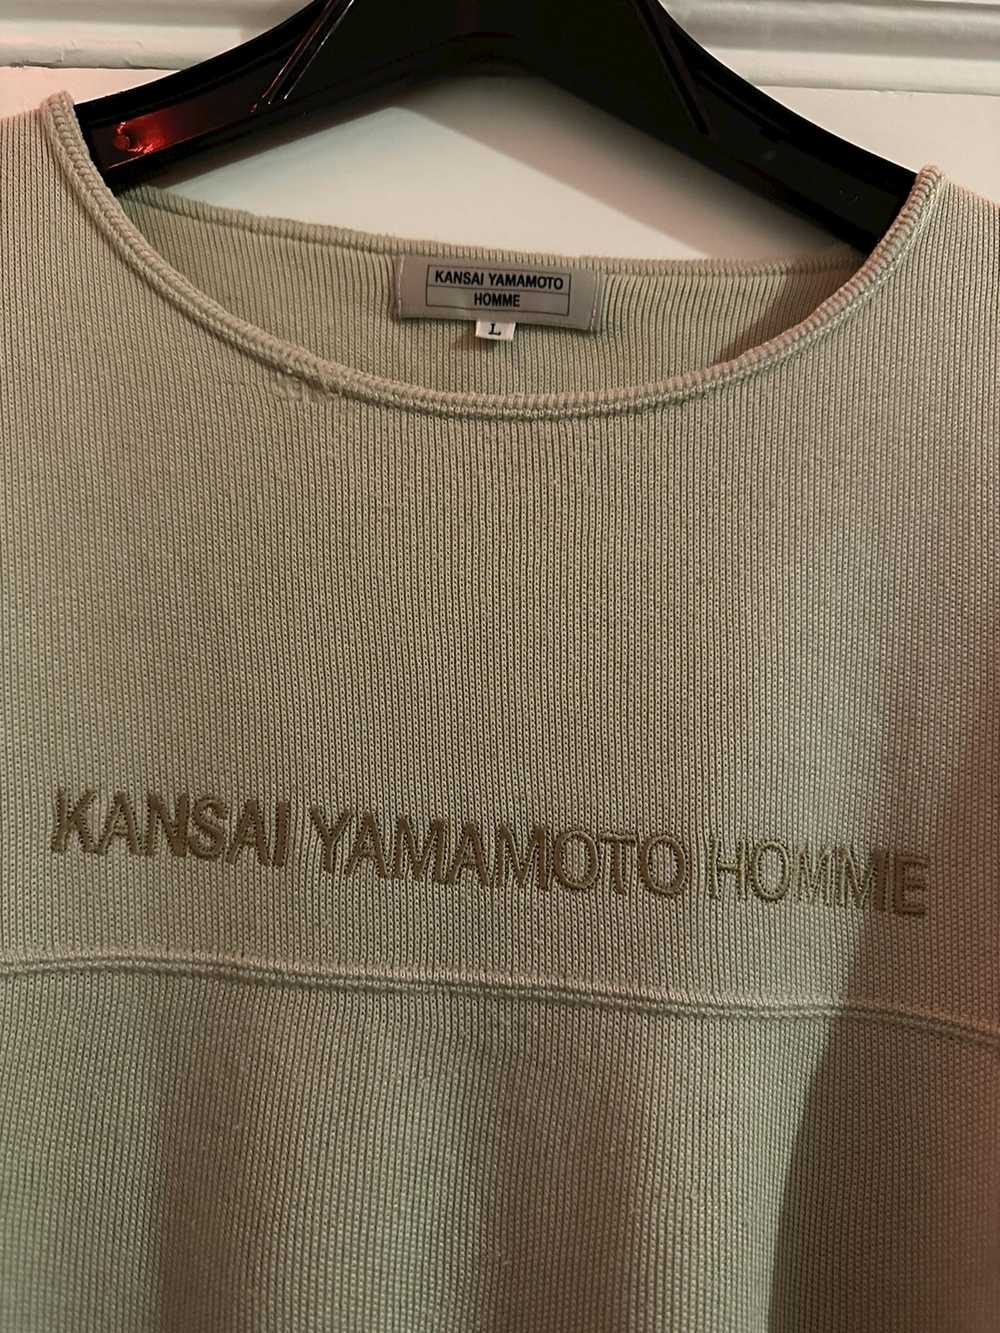 Kansai Yamamoto × Vintage Oversized Comfy Sweatsh… - image 3